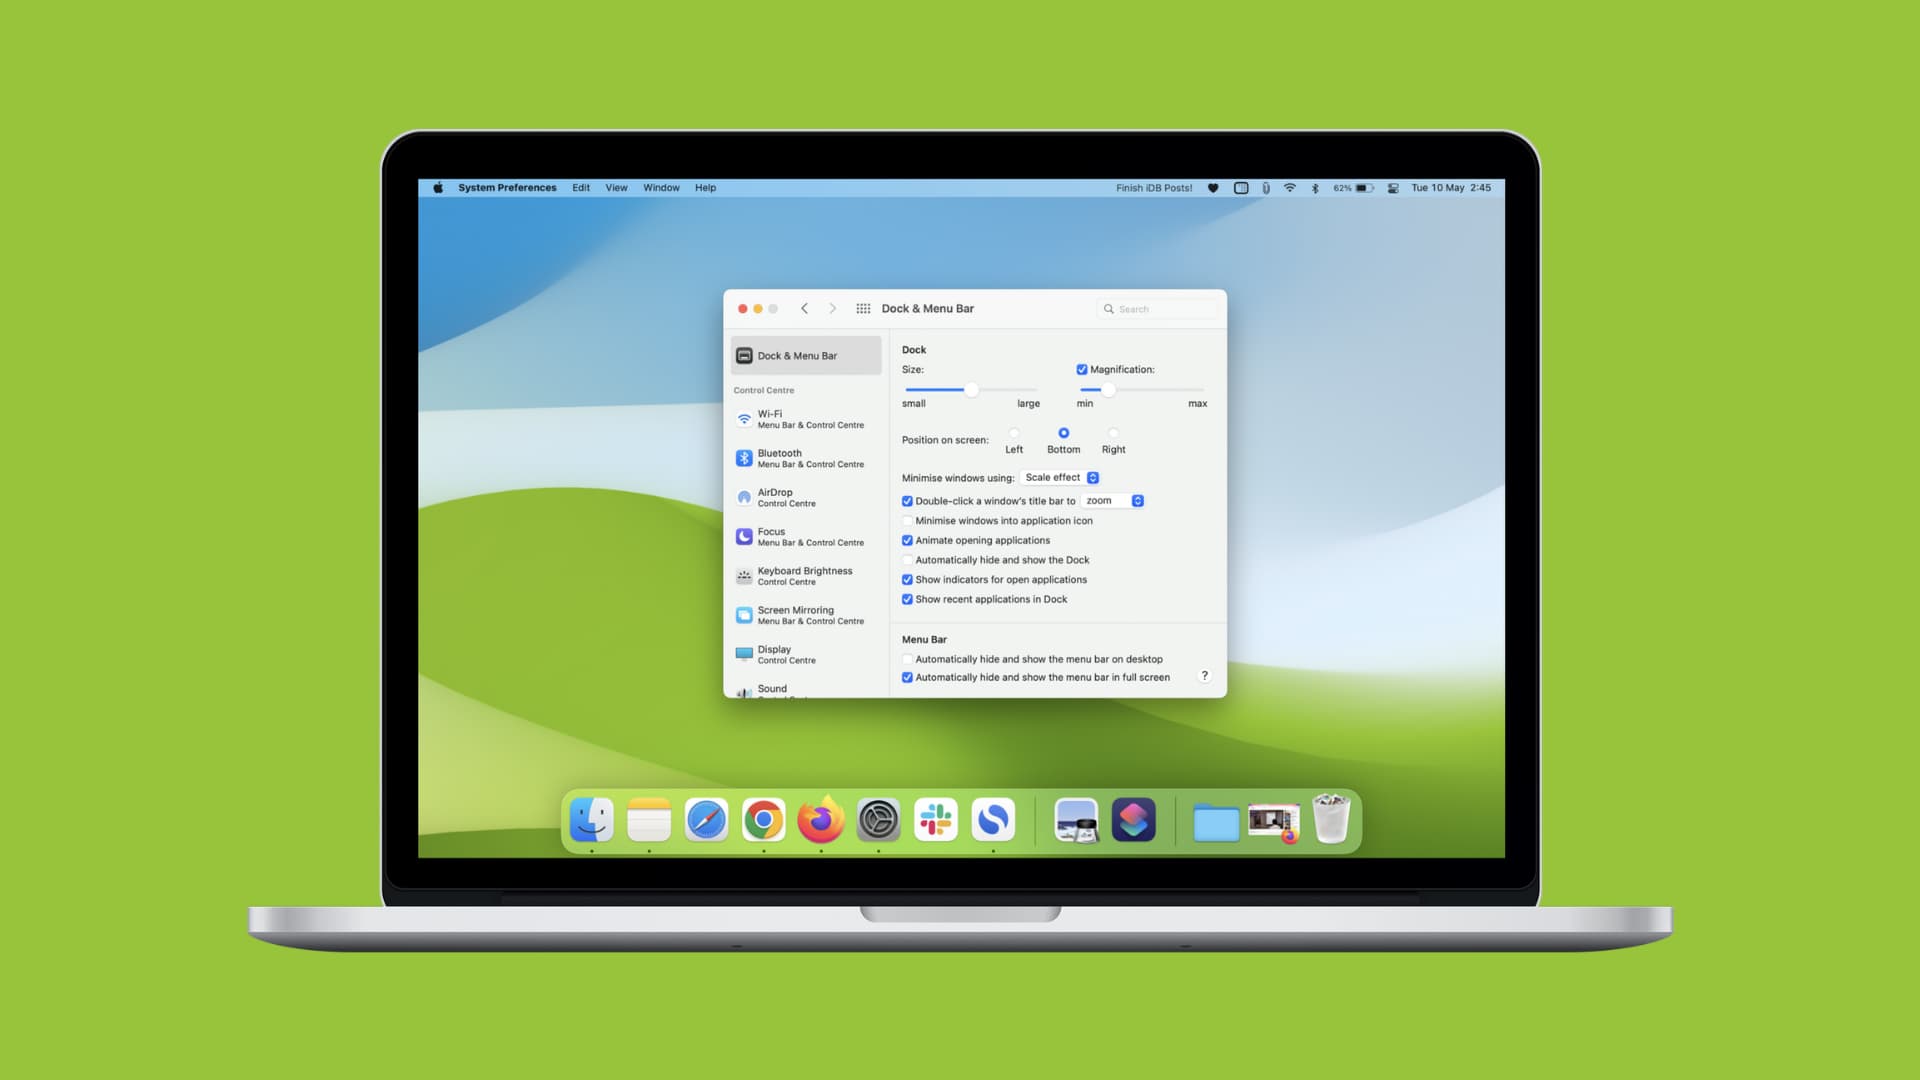 Customize Dock and menu bar on your Mac